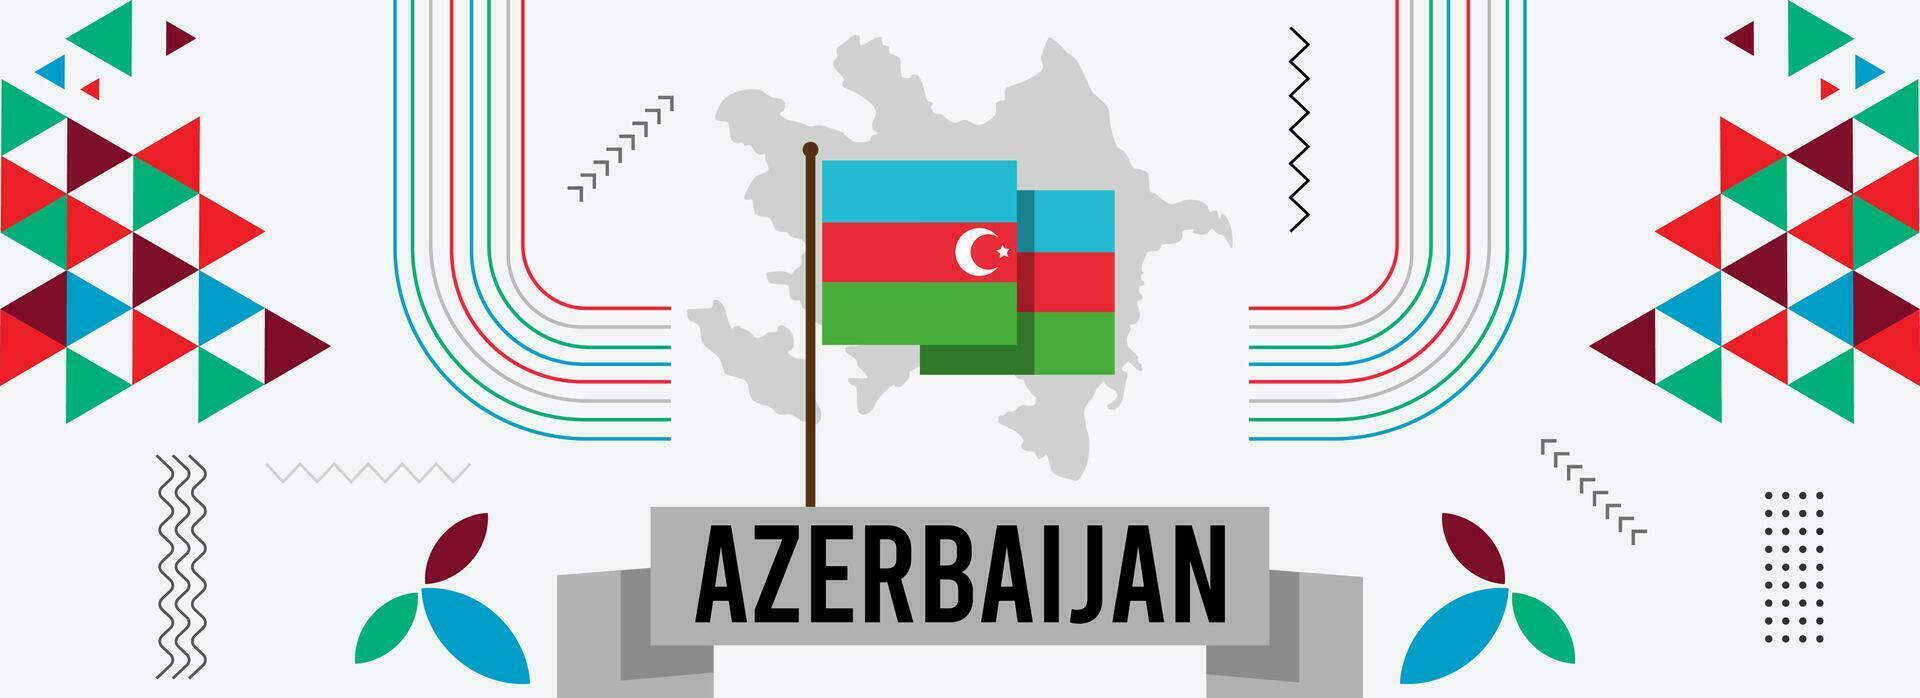 Aserbaidschan National Tag Banner oder Karte mit Aserbaidschaner Karte, abstrakt retro modern geometrisch Design mit Flagge Farben Thema Hintergrund vektor